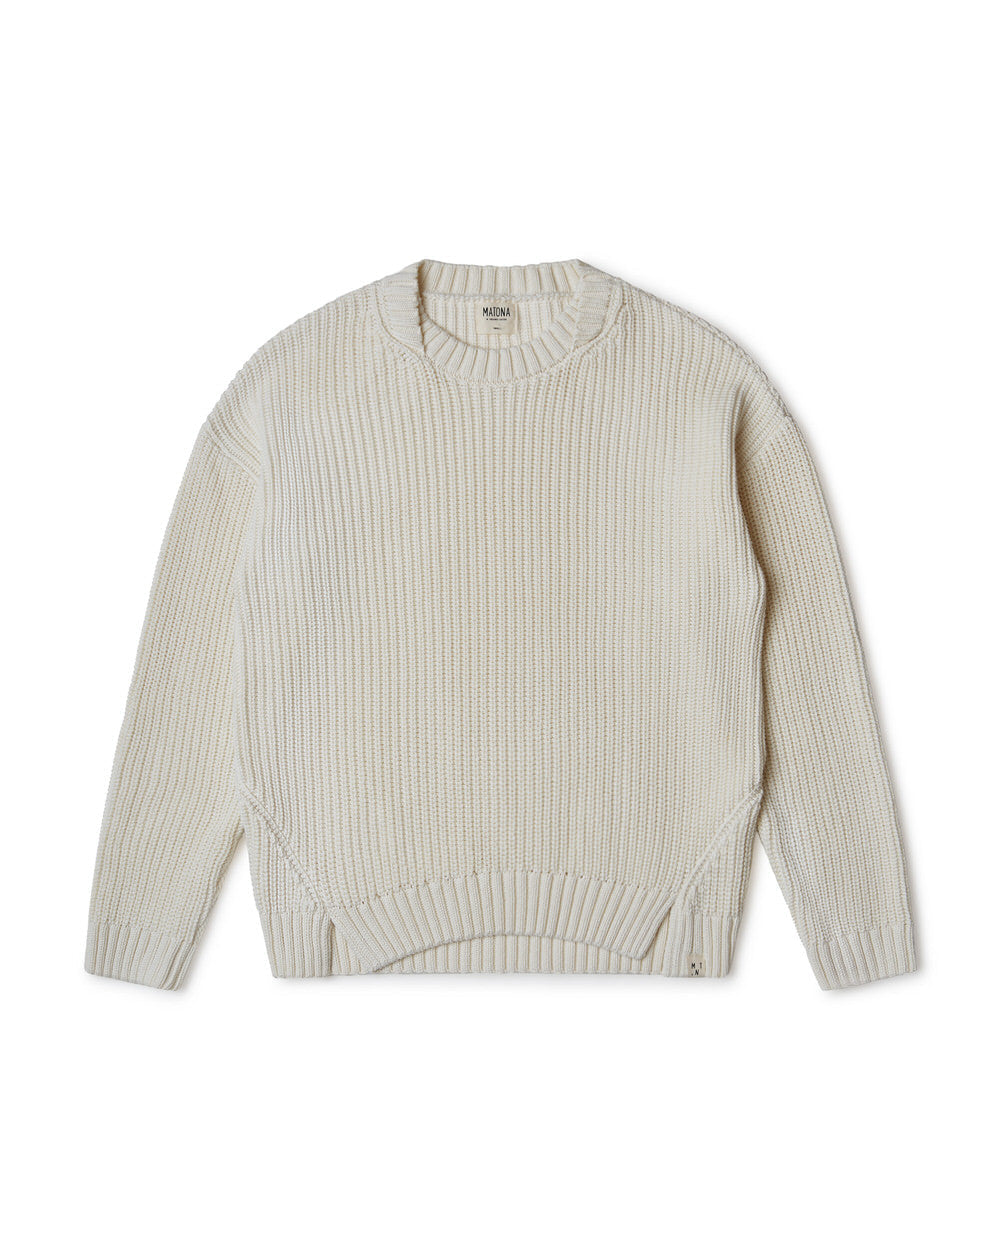 White, ecru knitted sweater made of organic cotton by Matona